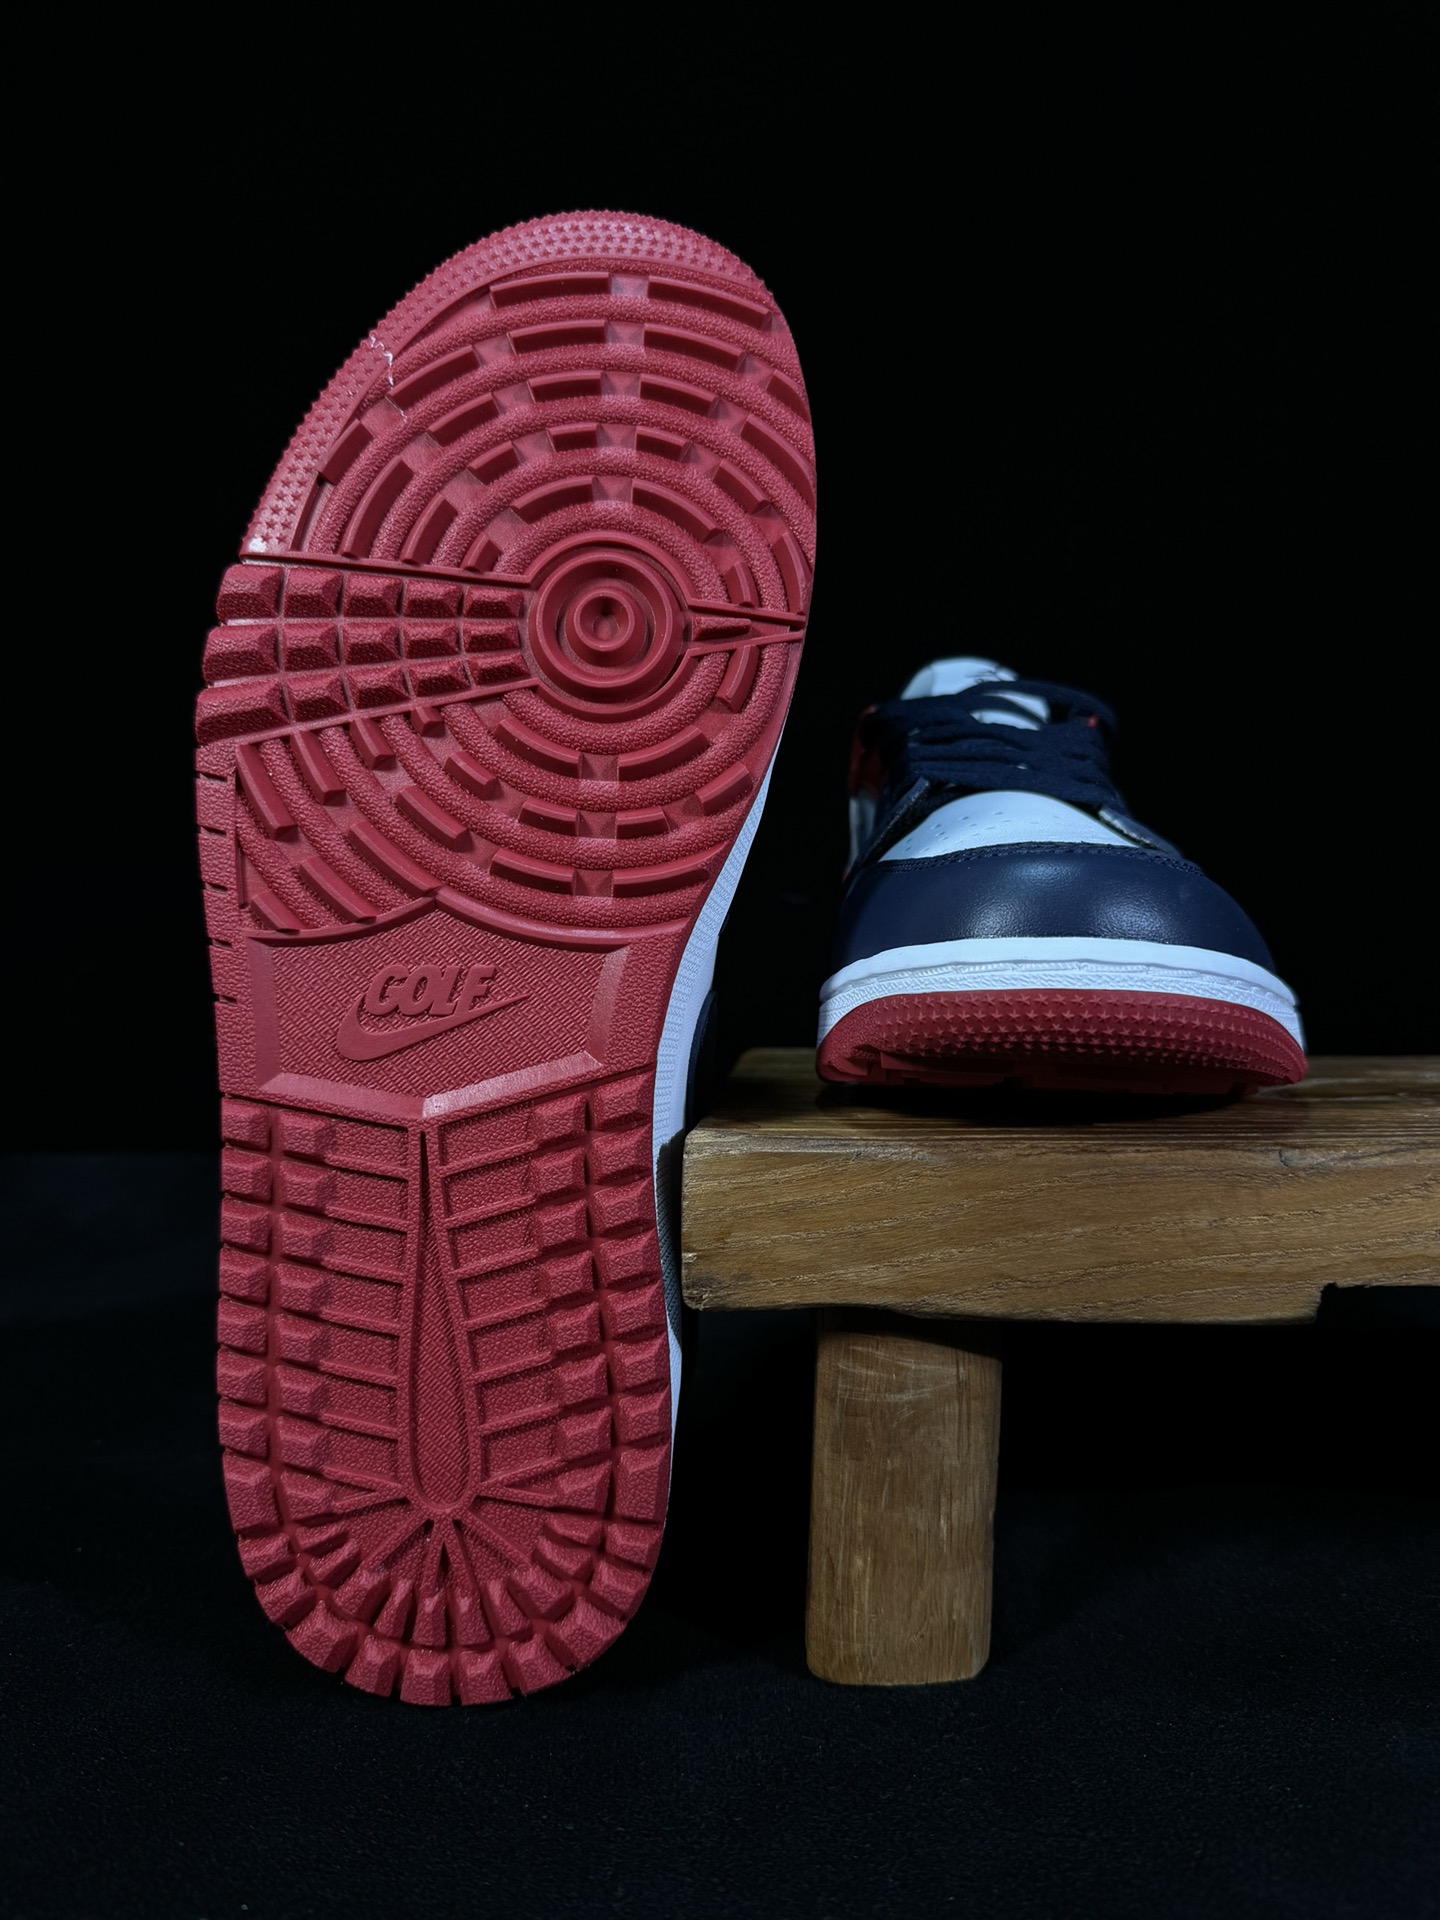 过验版AJ1Low低帮“USA深蓝红”市售最强高尔夫天花板品质！市面唯一正确版本全鞋正品原材料货号DD9